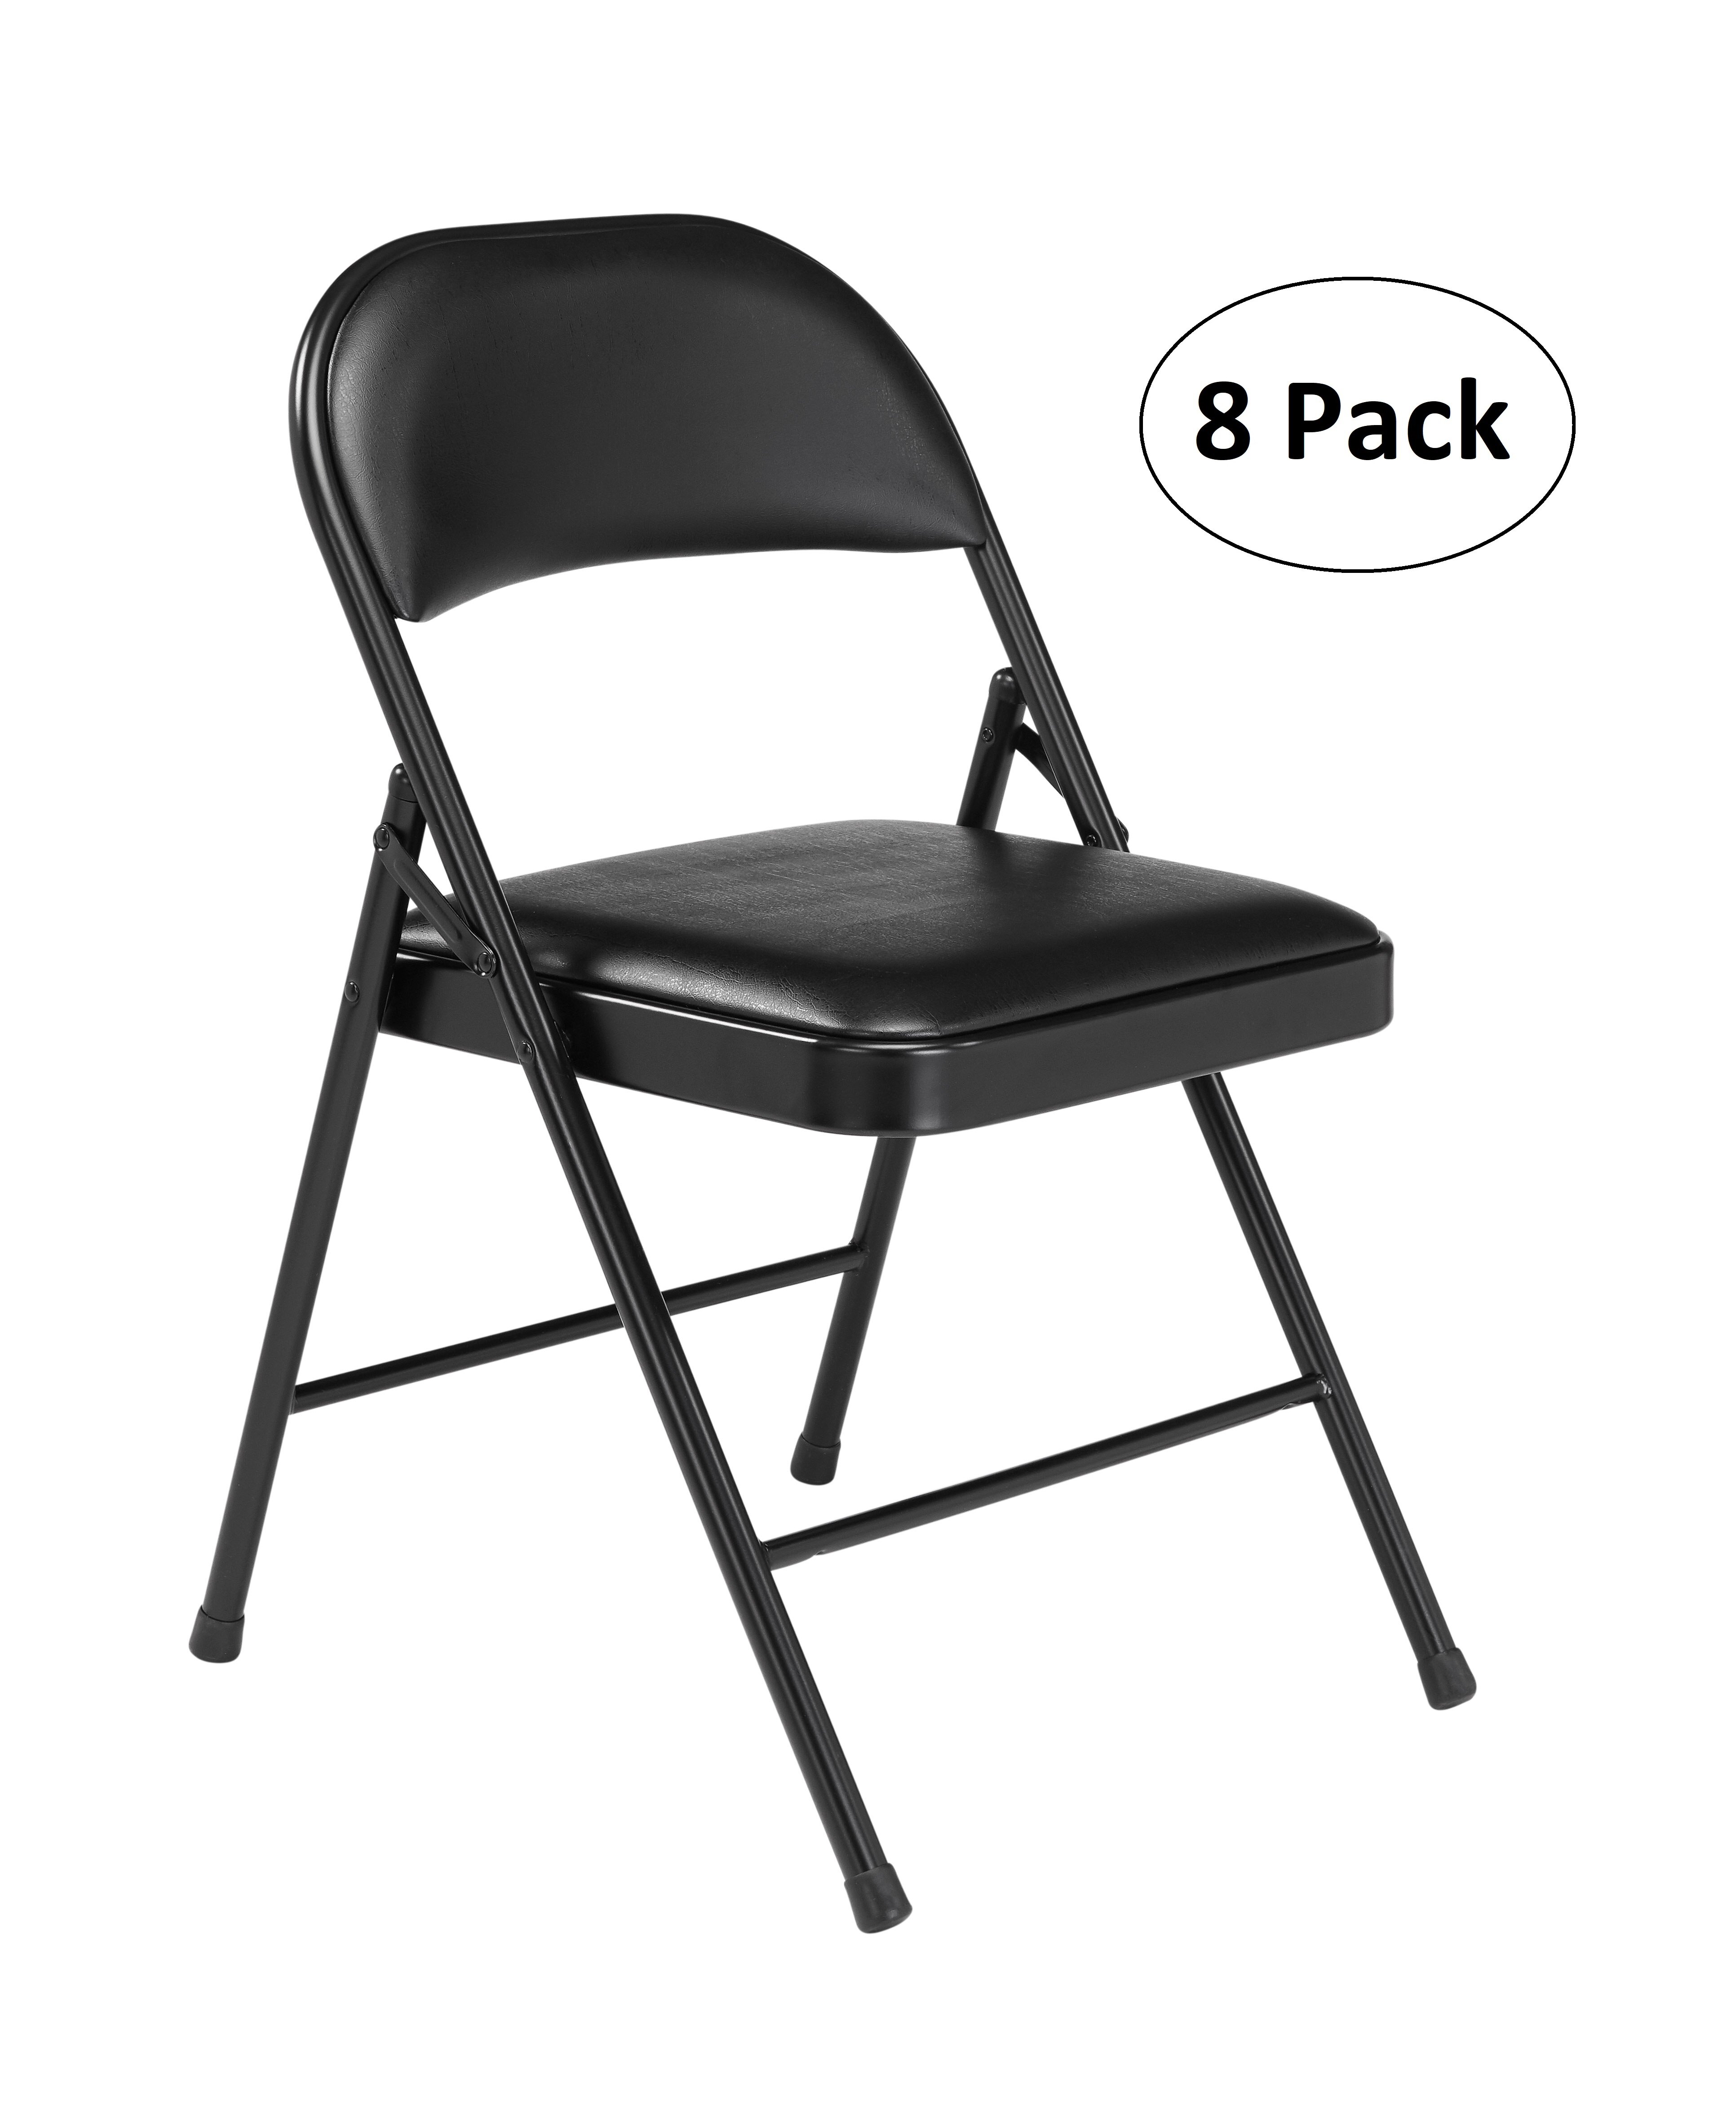 https://assets.wfcdn.com/im/75445261/compr-r85/1562/156237045/vinyl-padded-stackable-folding-chair-folding-chair-set.jpg